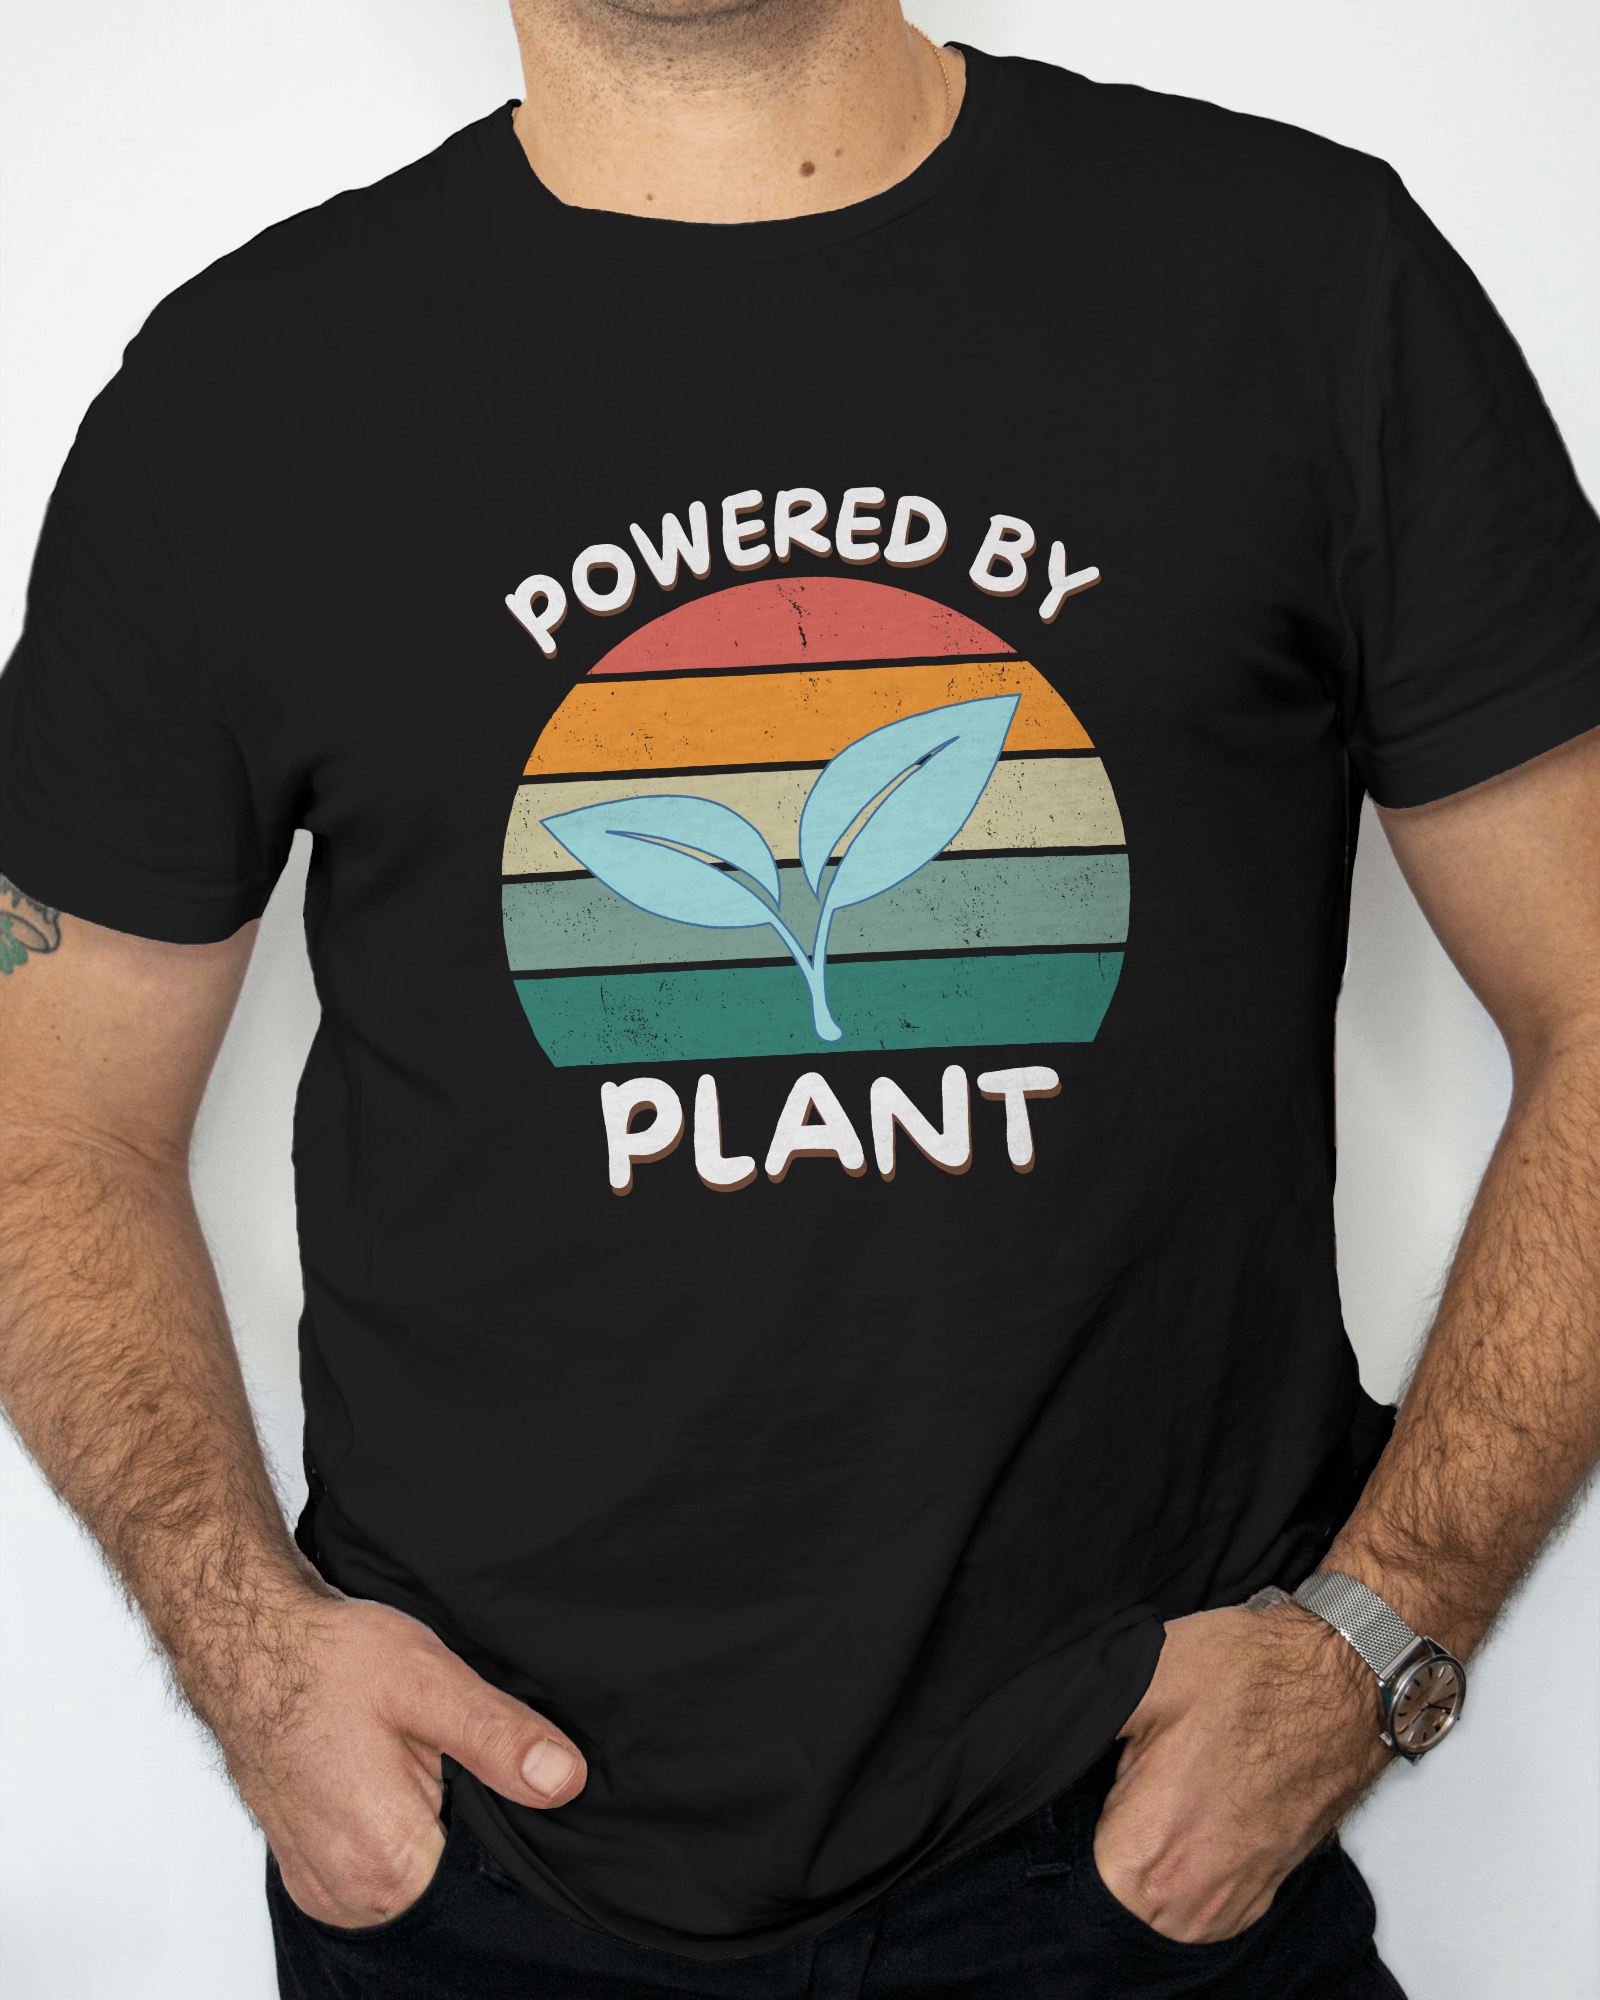 vegan shirt for men